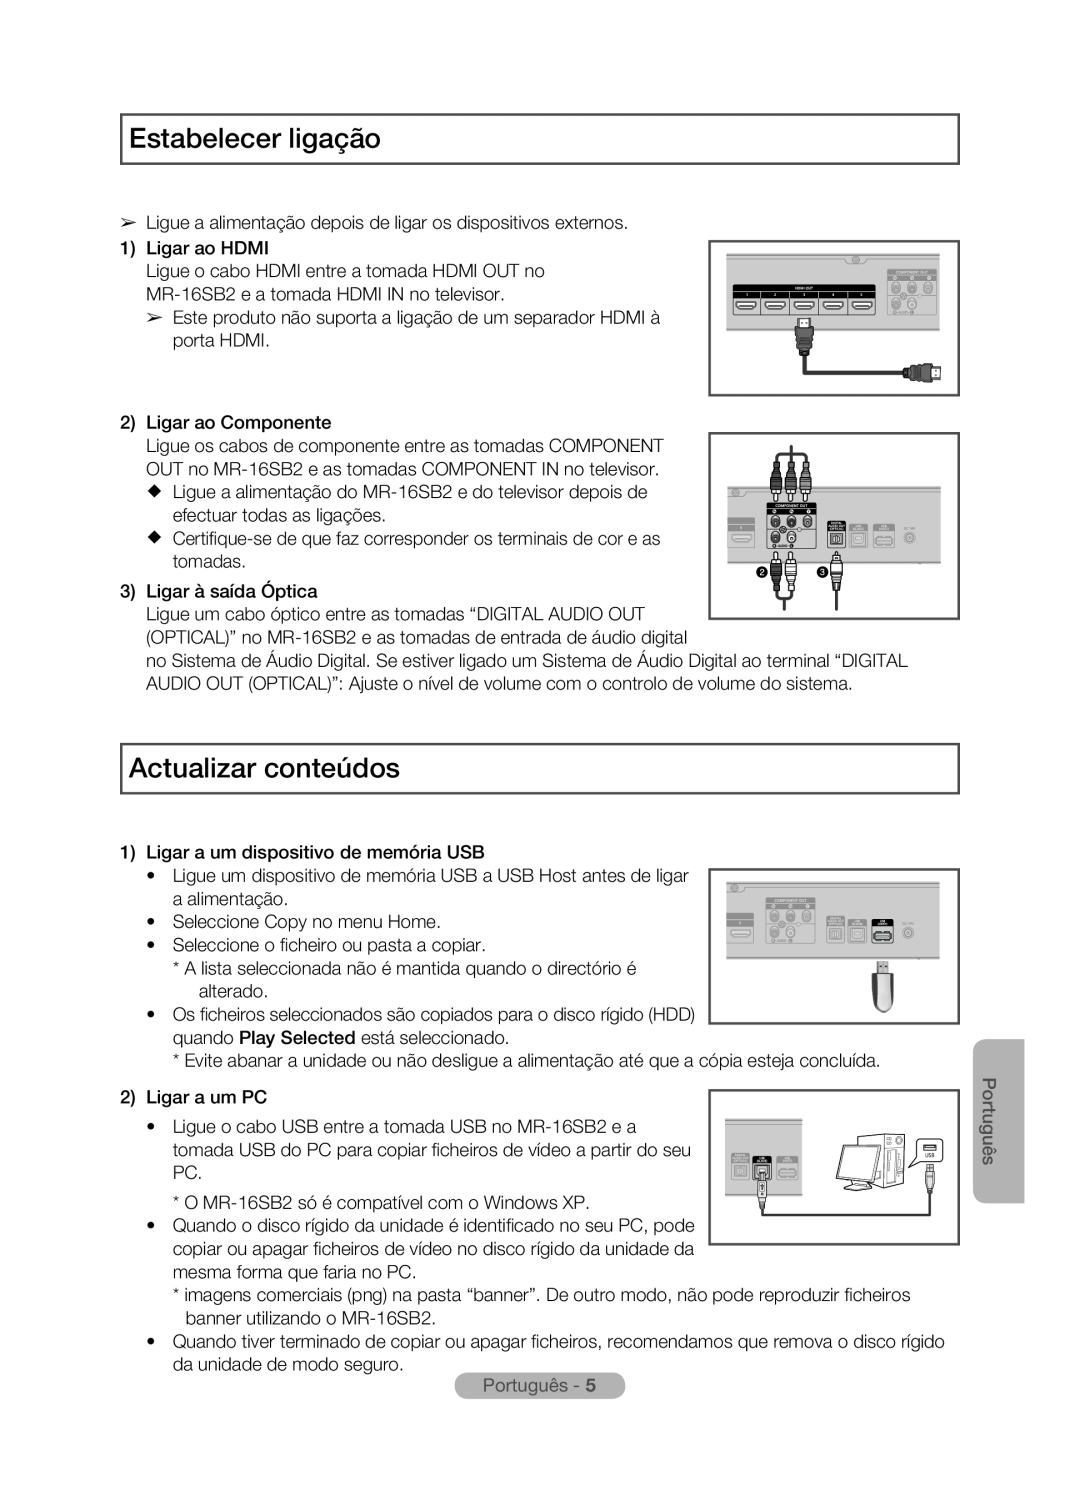 Samsung MR-16SB2 manual Estabelecer ligação, Actualizar conteúdos, Português 